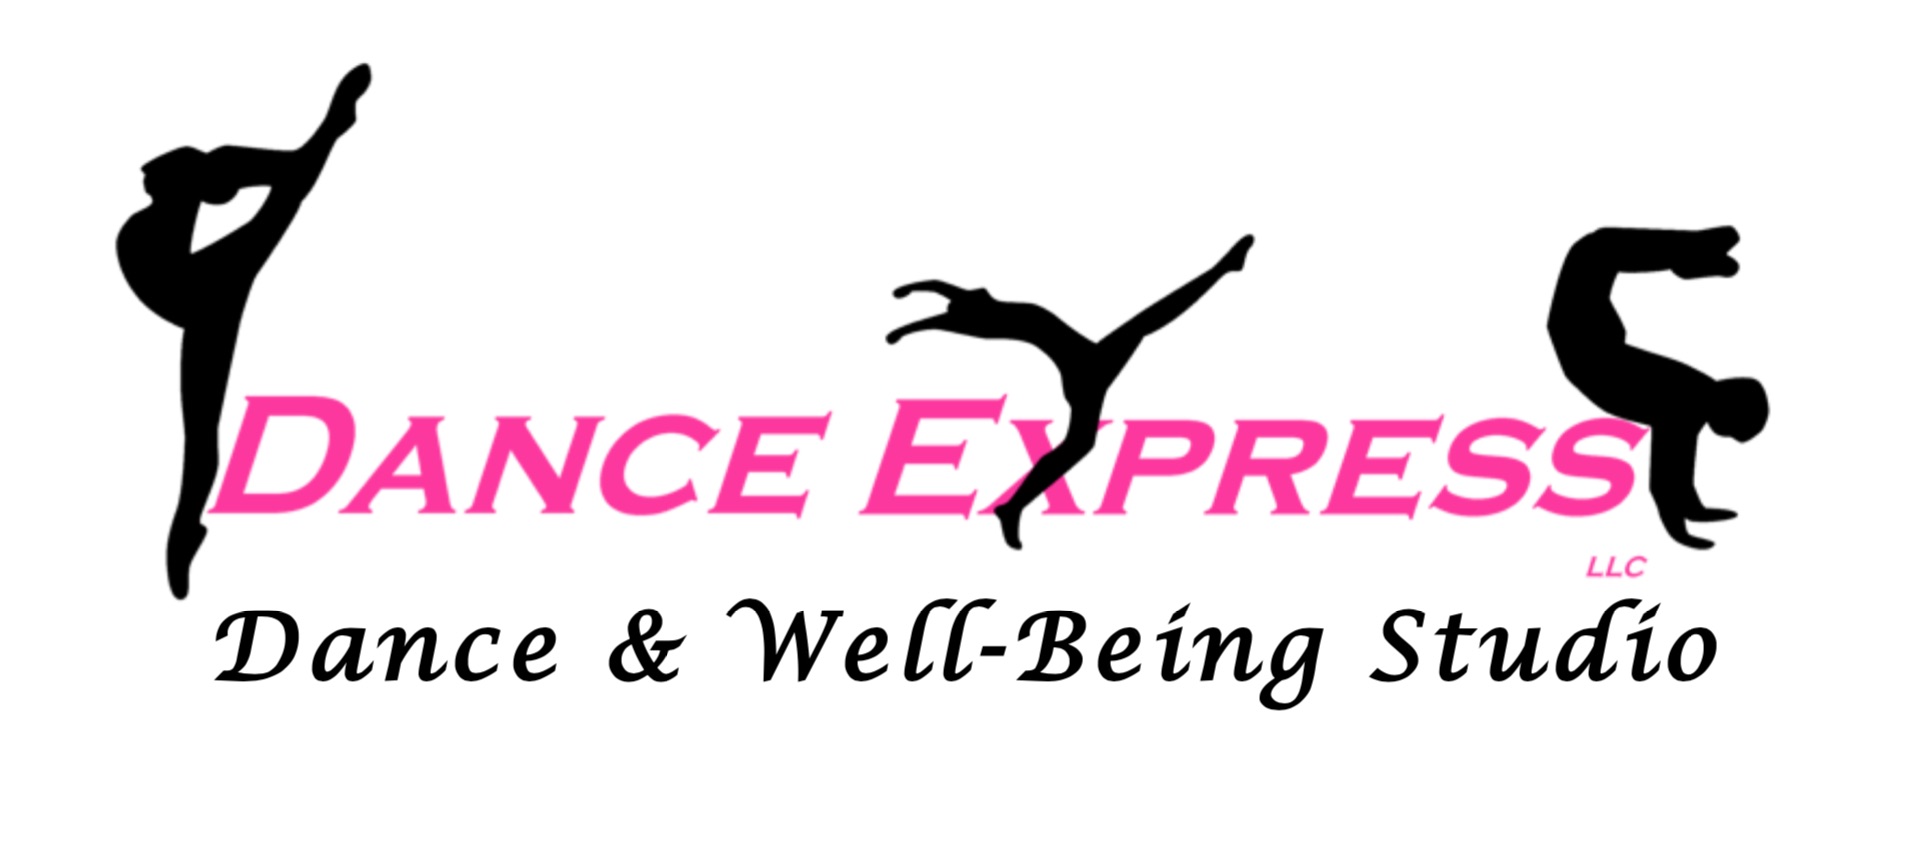 Dance Express, LLC Dance & Well-Being Studio